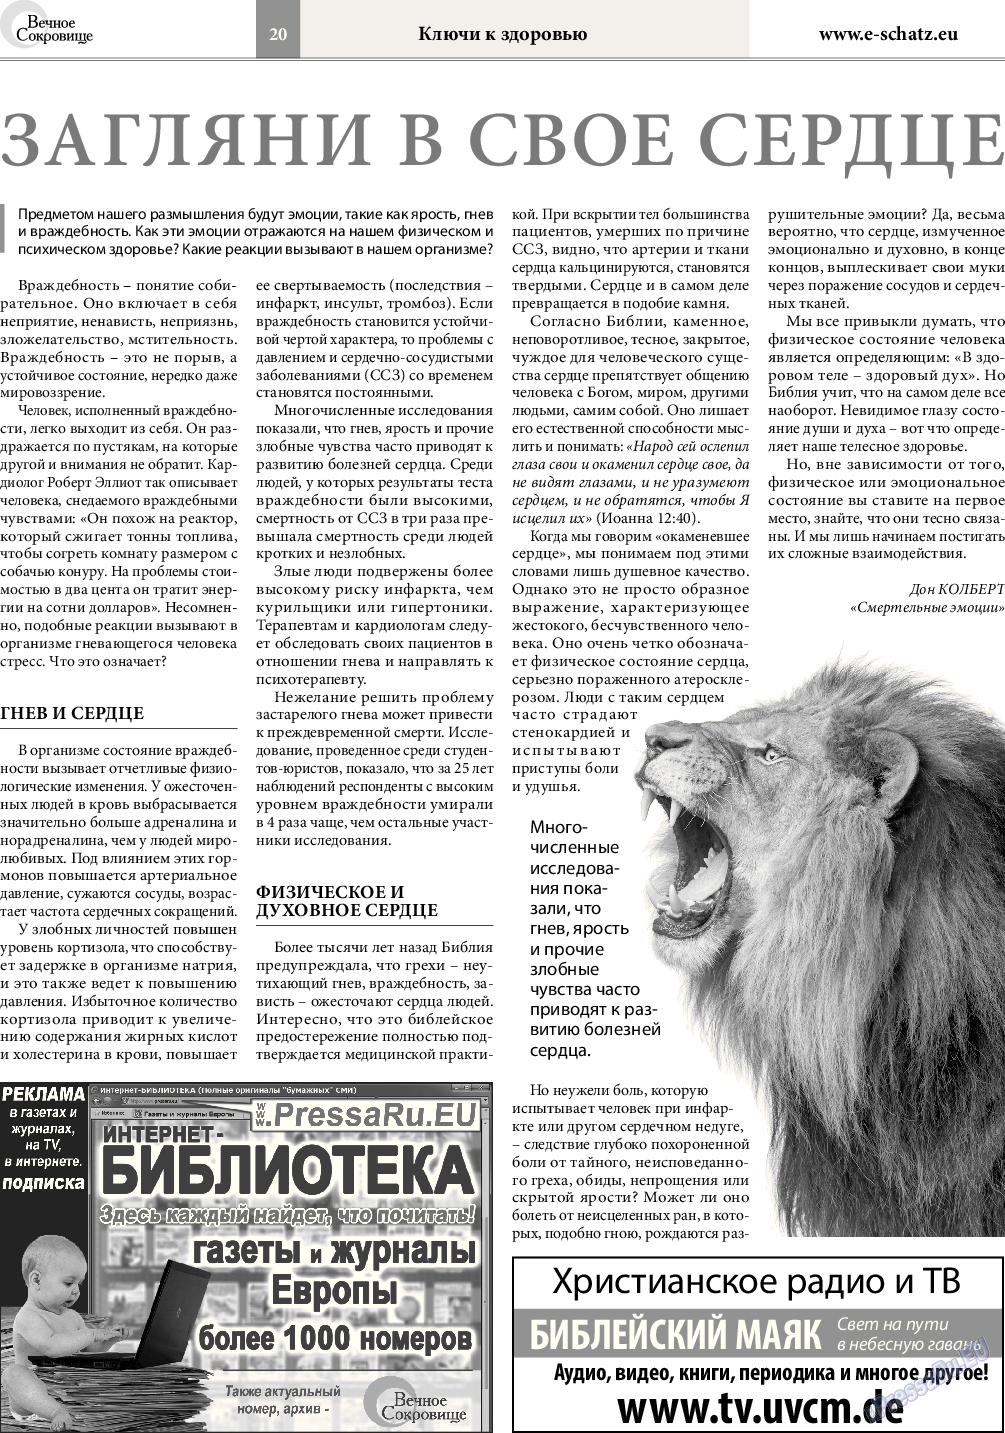 Вечное сокровище (газета). 2016 год, номер 3, стр. 20